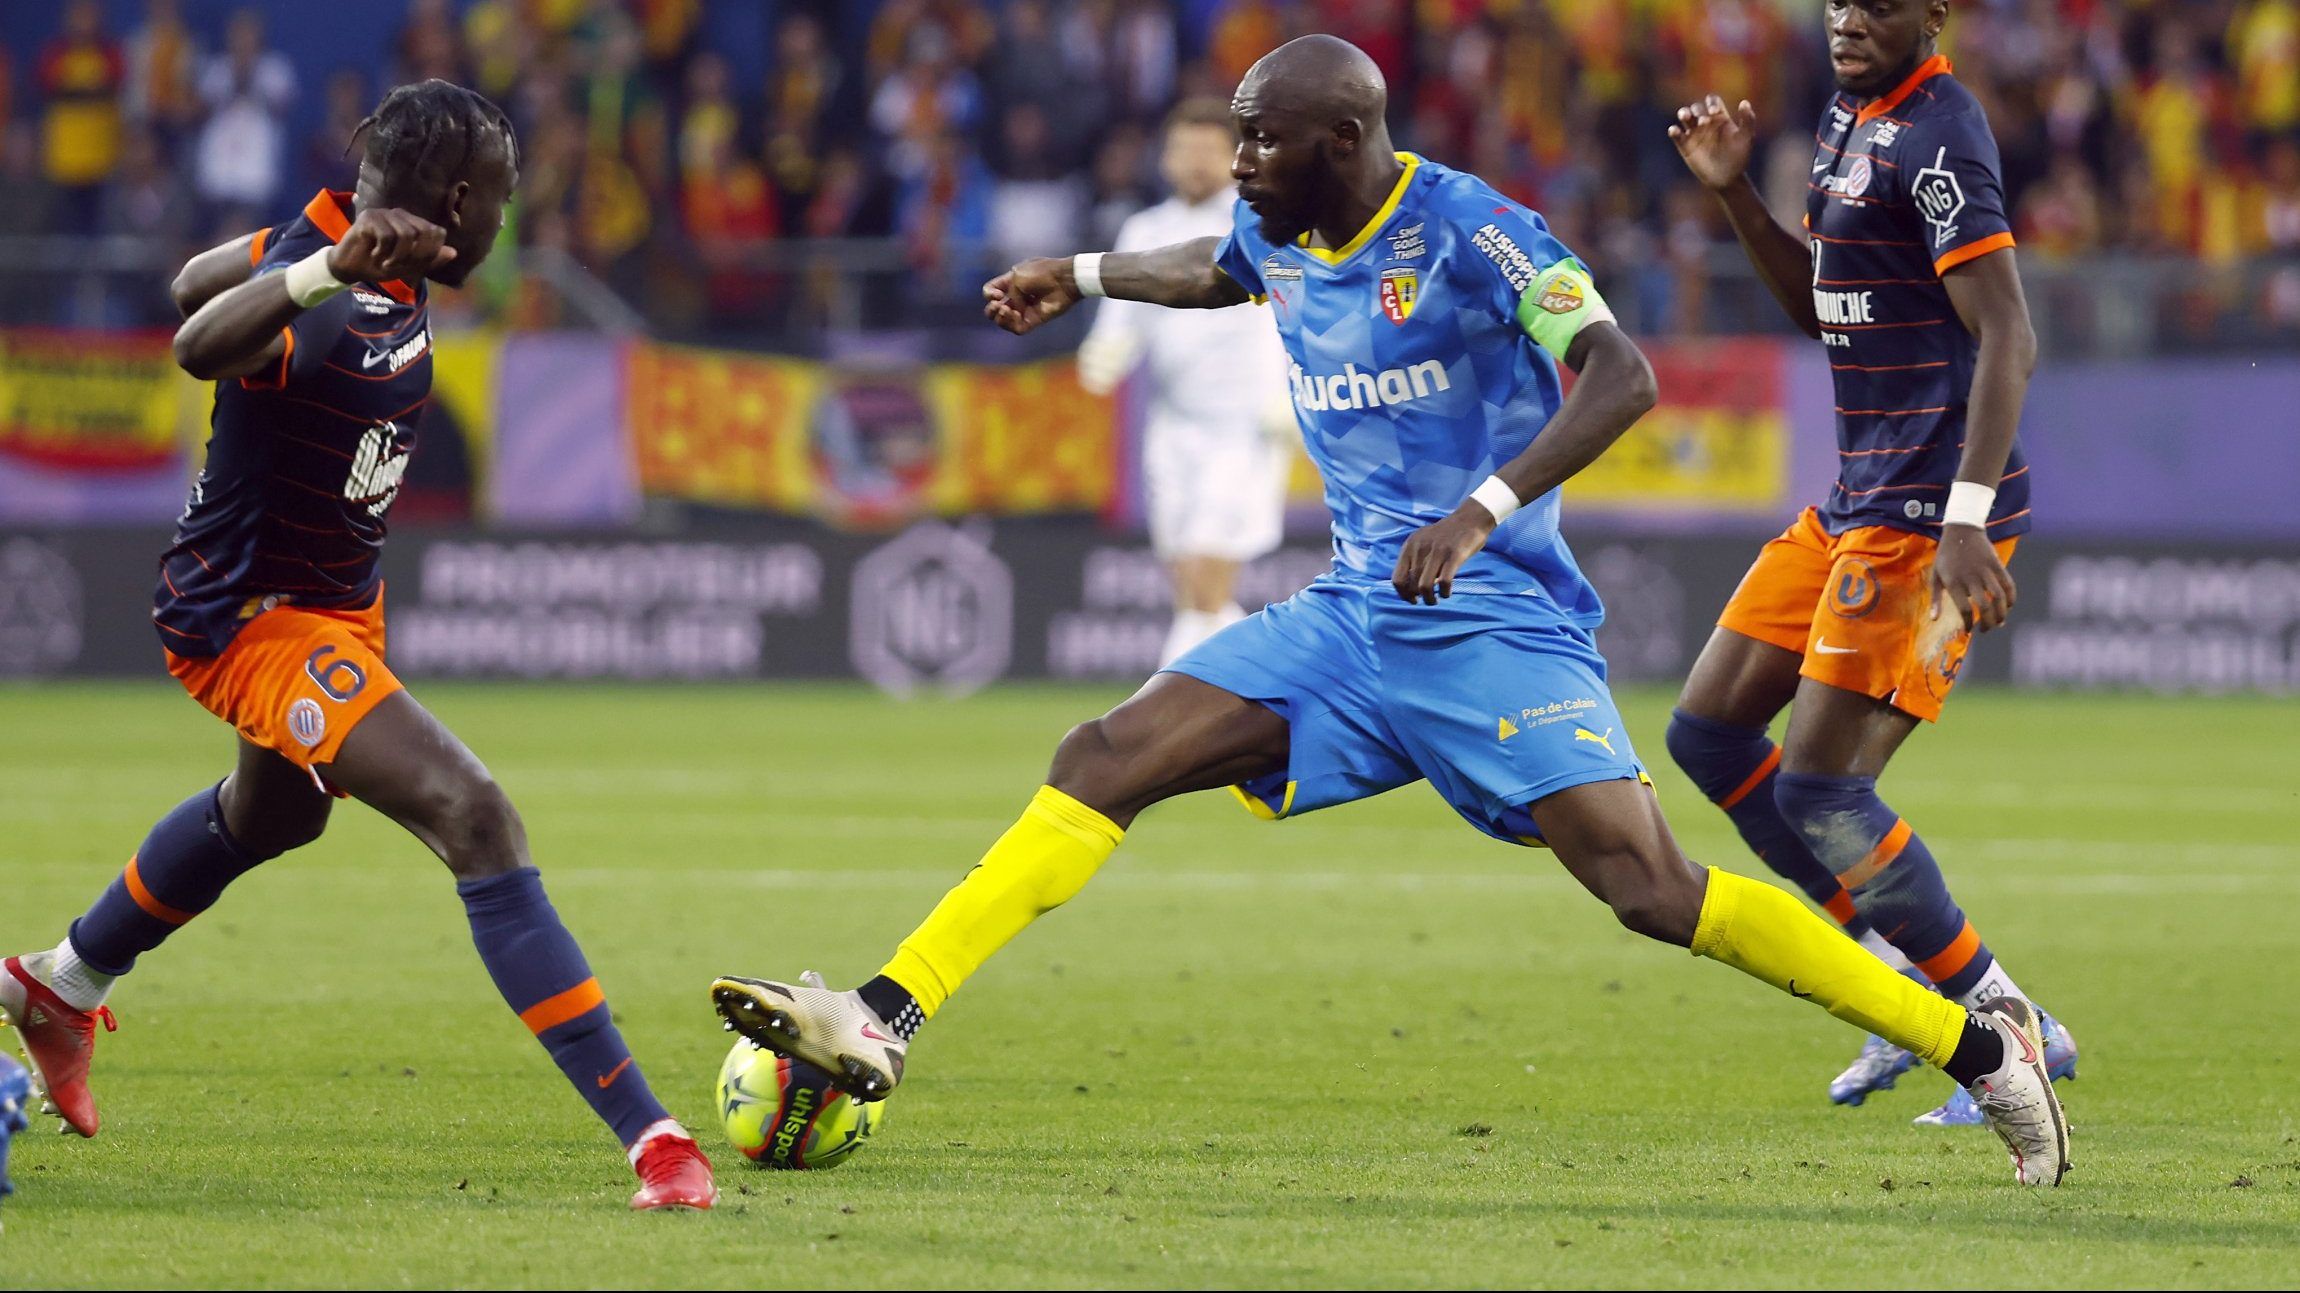 RC Lens midfielder Seko Fofana in action vs Montpellier in Ligue 1